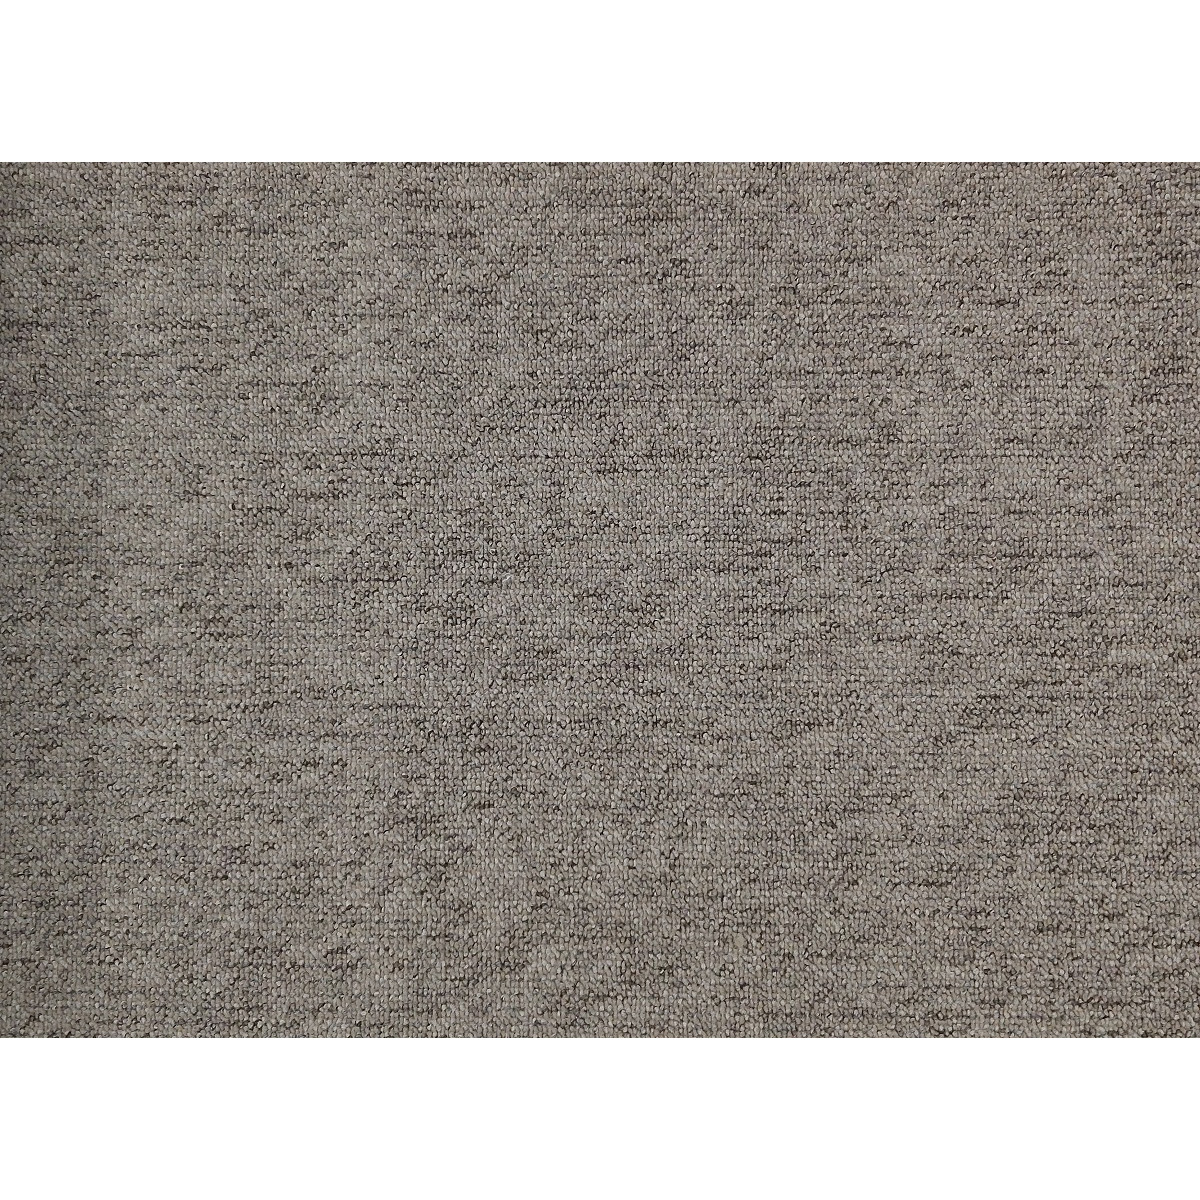 Metrážový koberec Monaco 92 hnědý